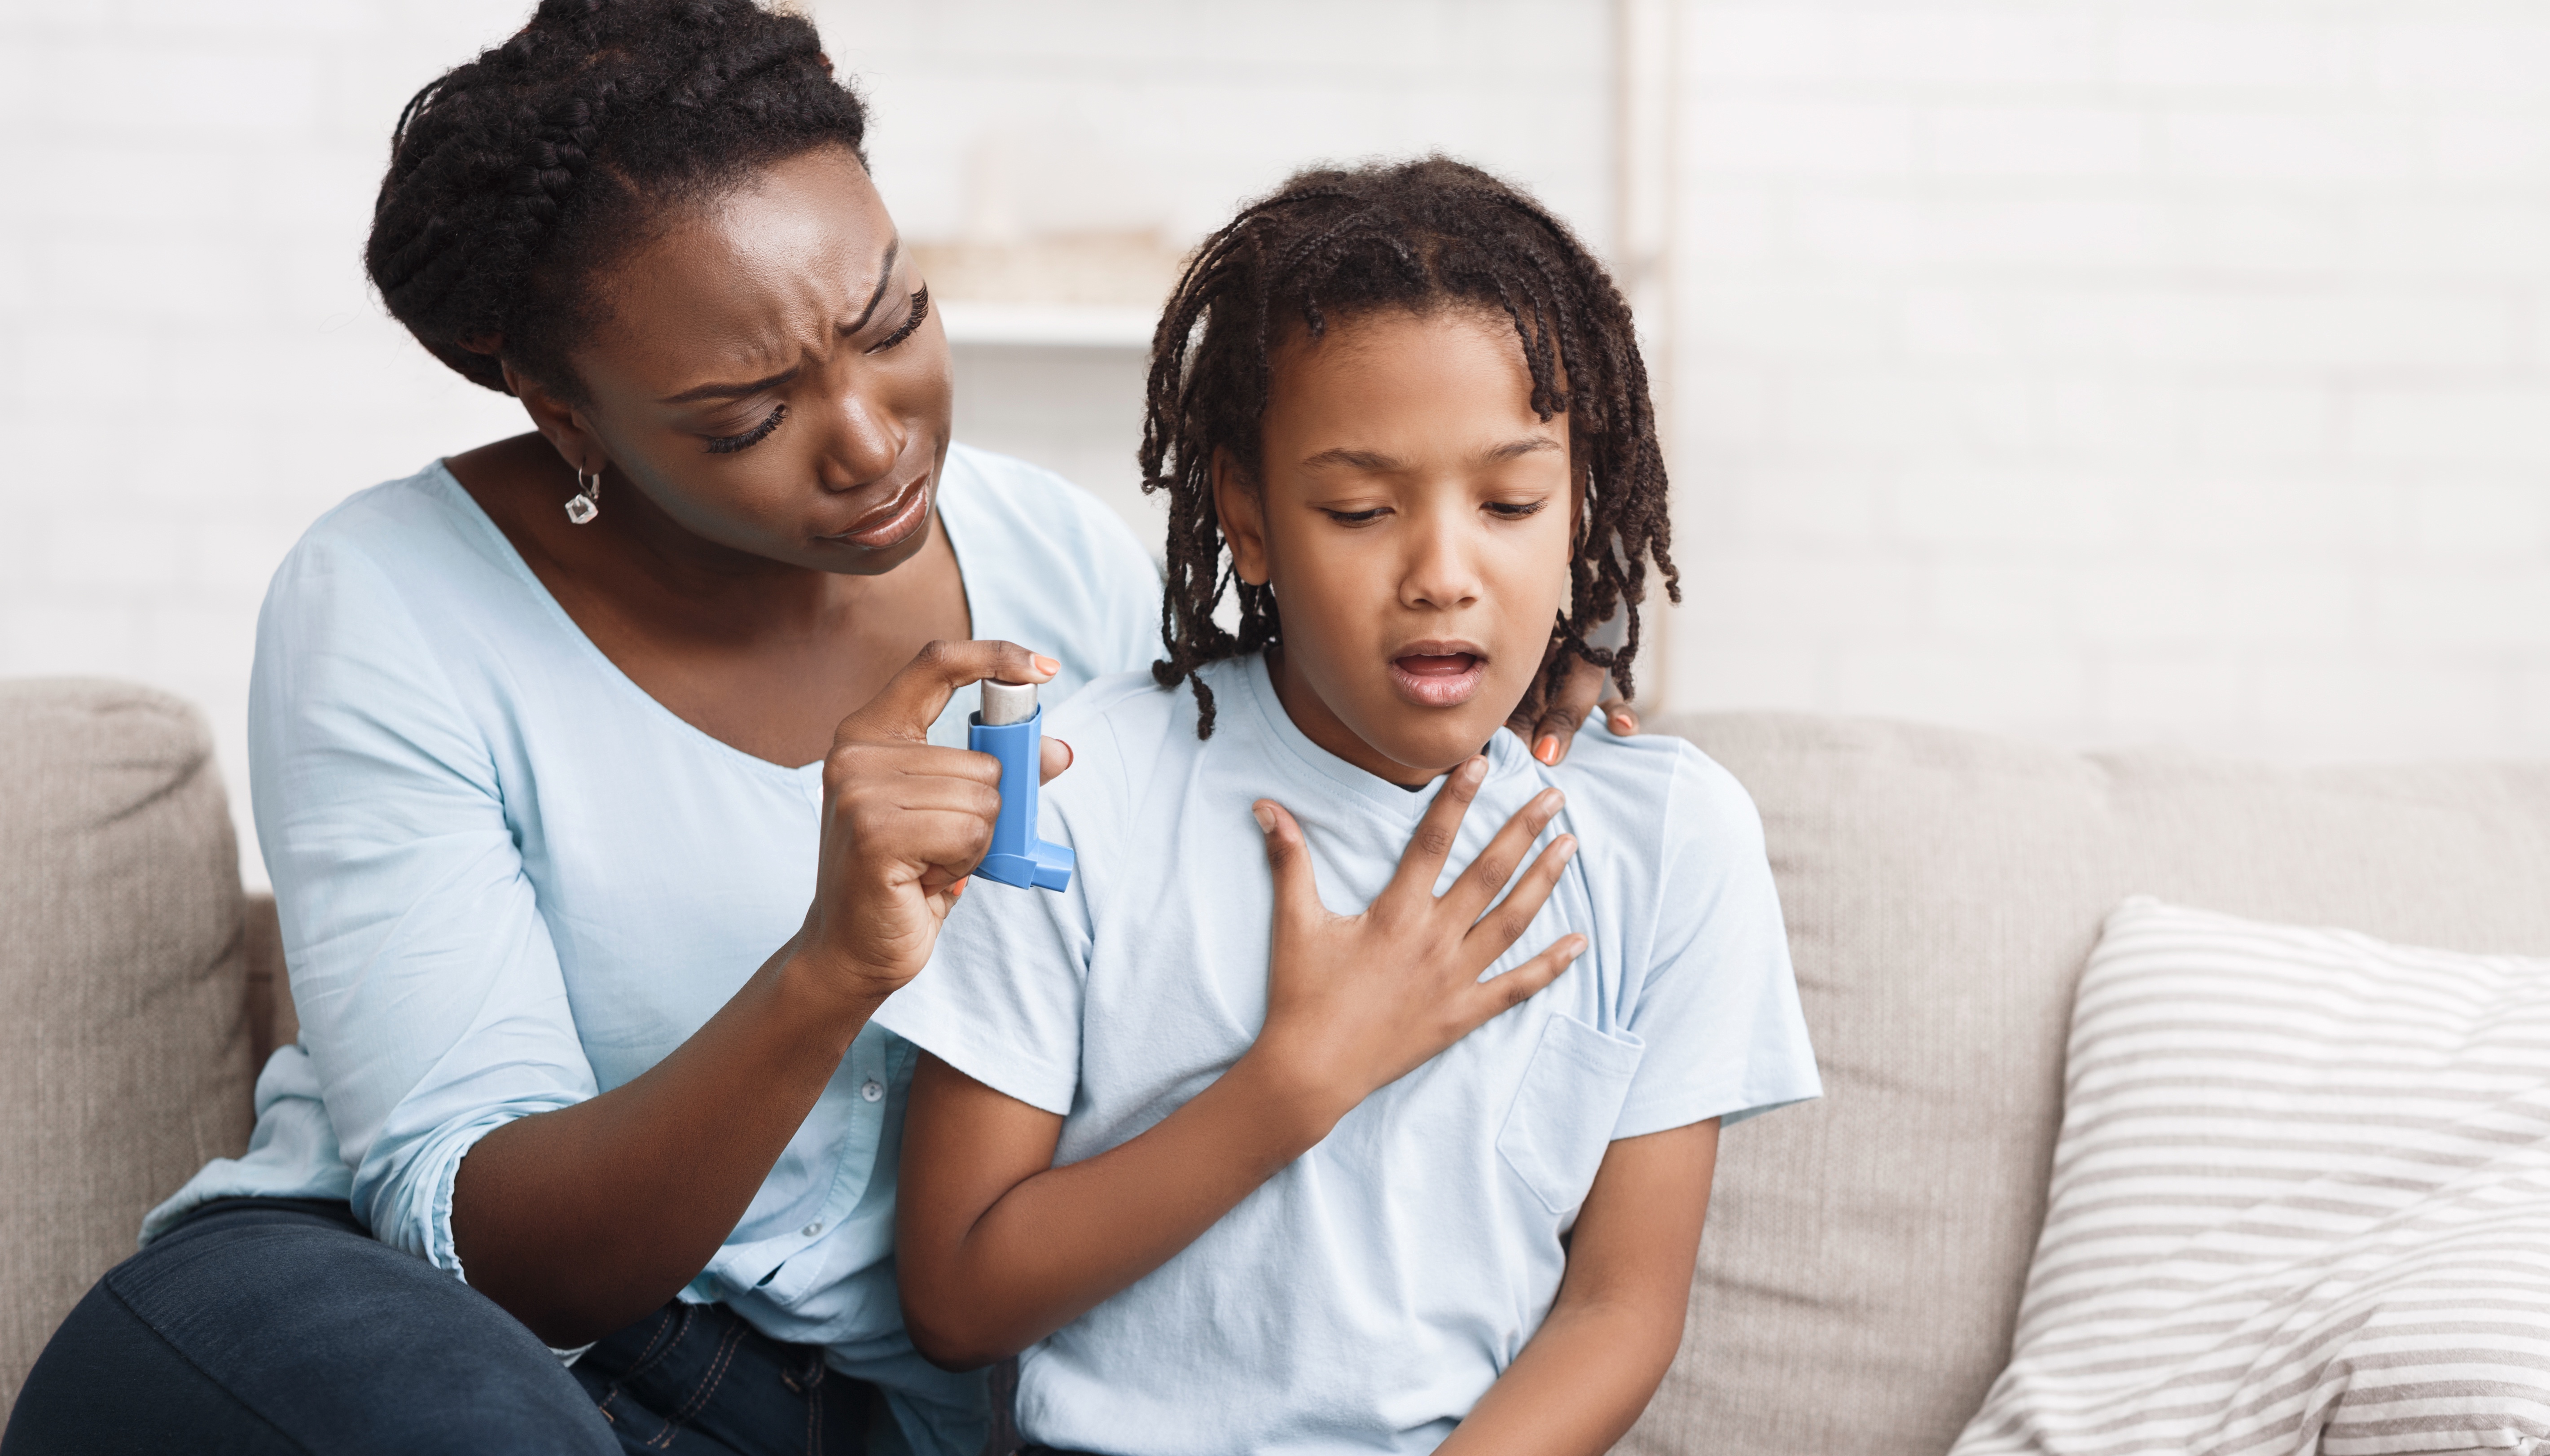 Il semblerait que l'asthme ne soit pas un facteur de risque de développer une forme grave de la Covid-19. © Prostock-studio, Adobe Stock